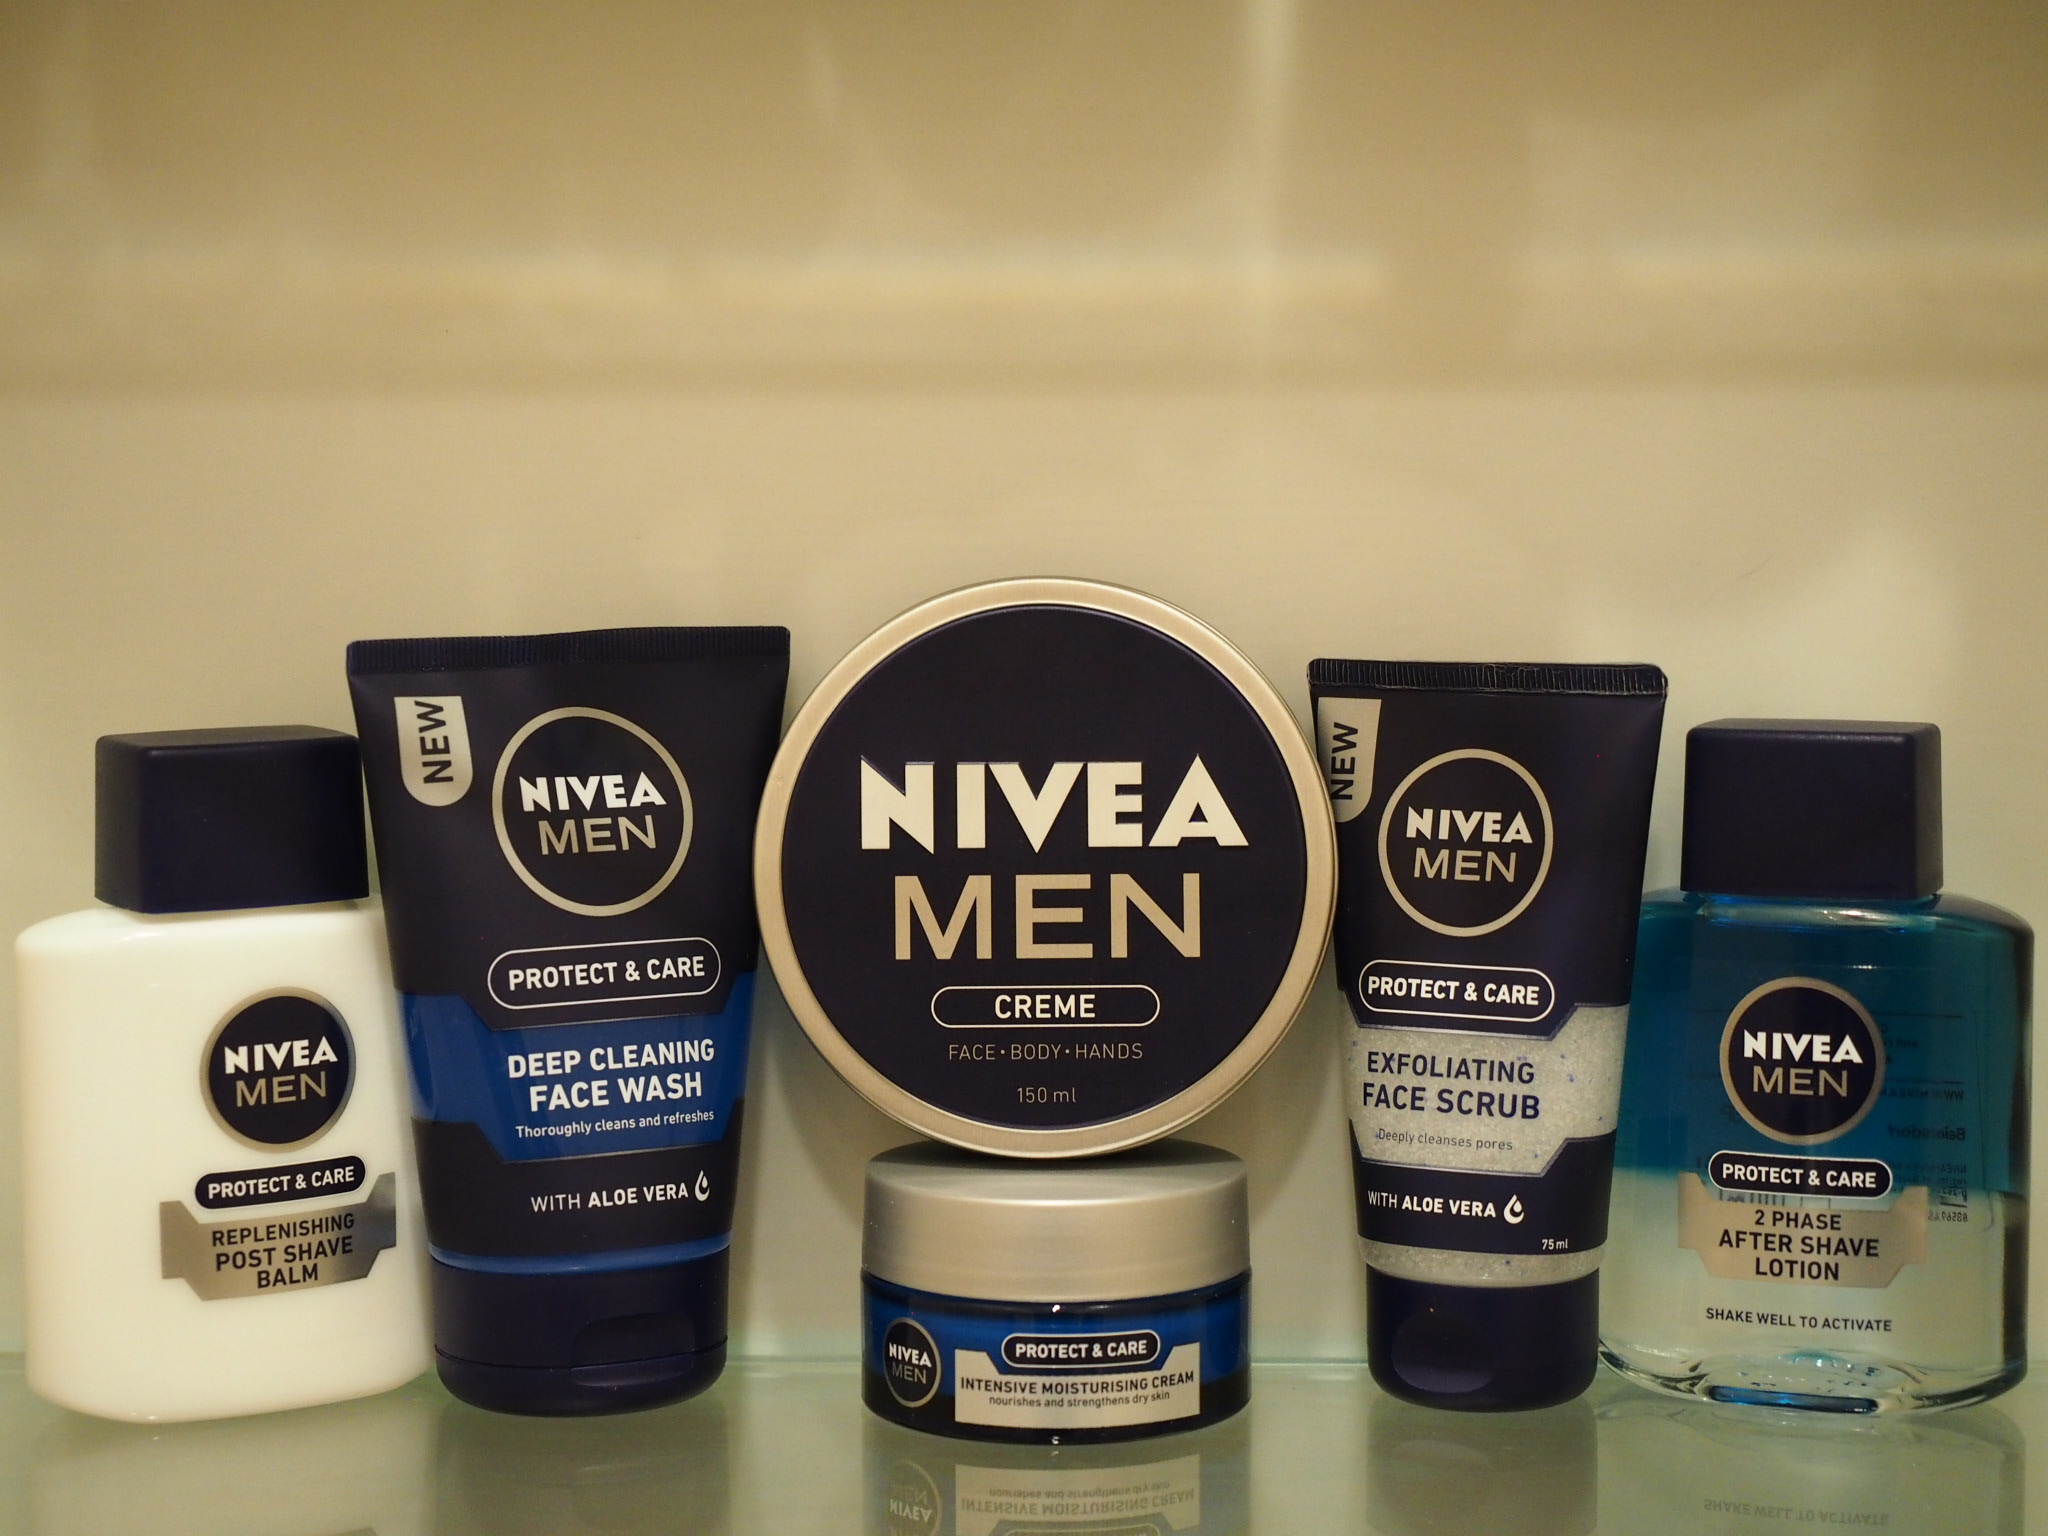 Nivea Has a New Face with Nivea Men Protect & Care